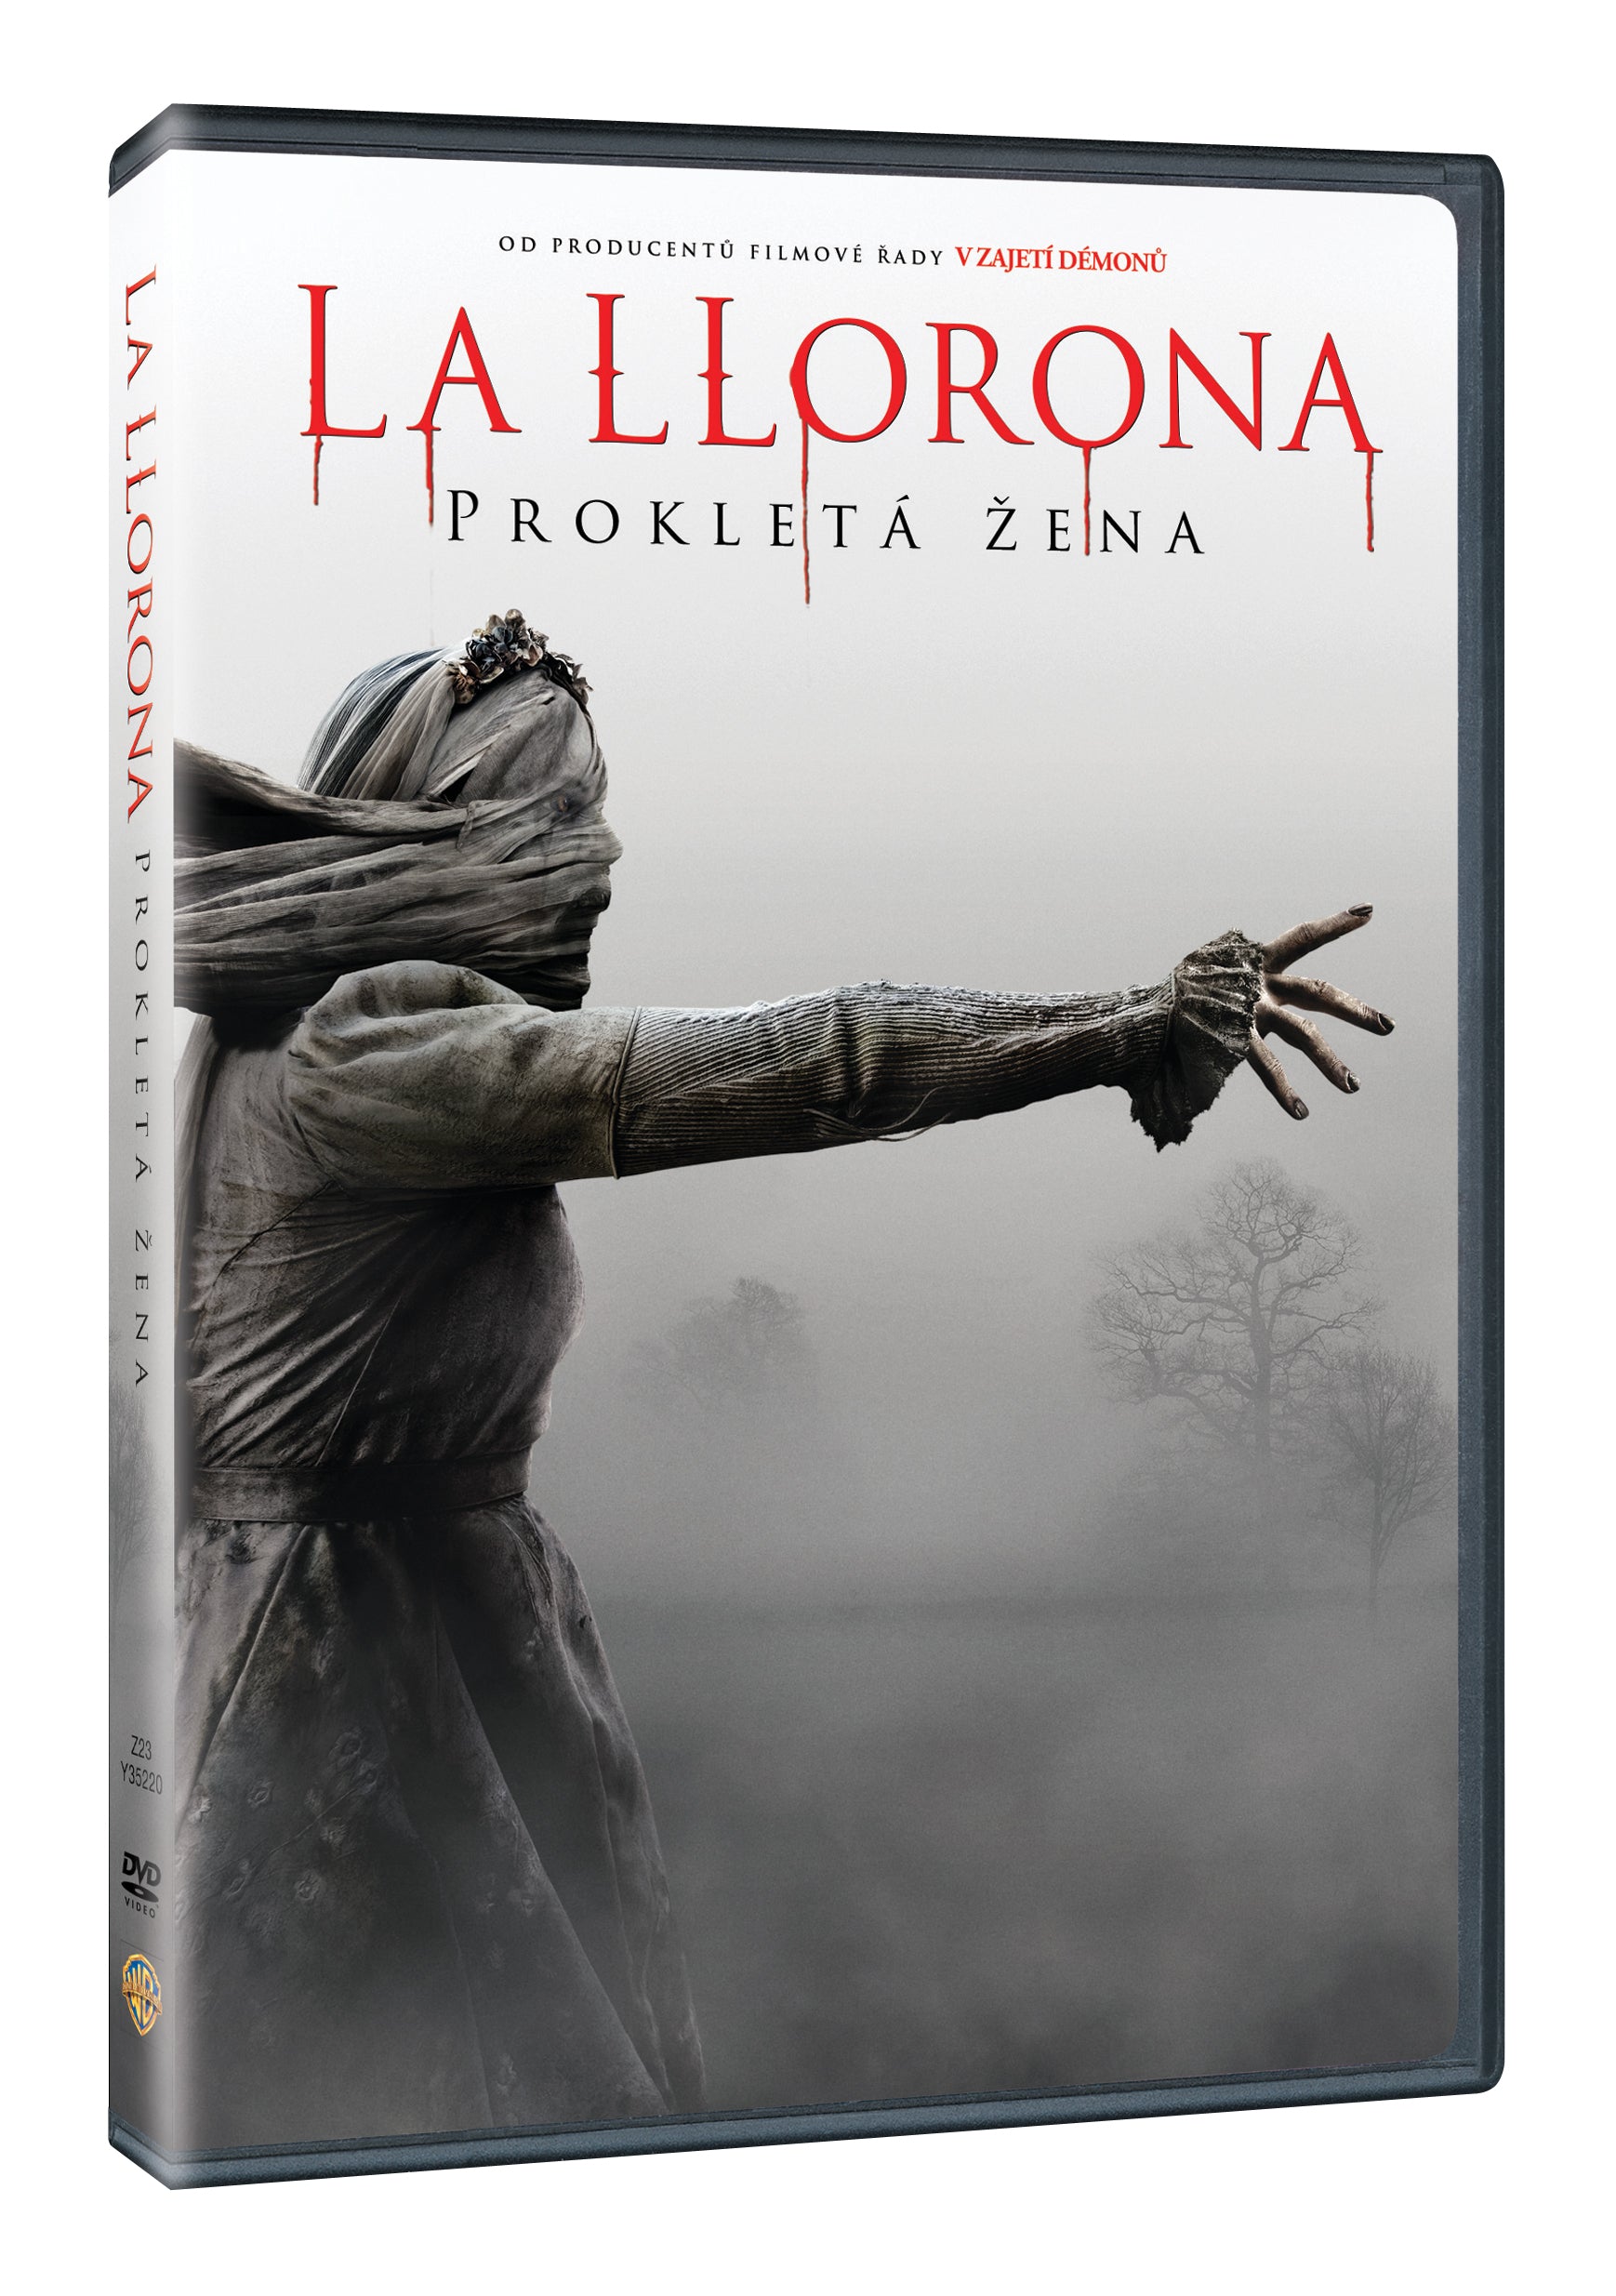 Der Fluch von La Llorona / Der Fluch der weinenden Frau / La Llorona: Prokleta zena